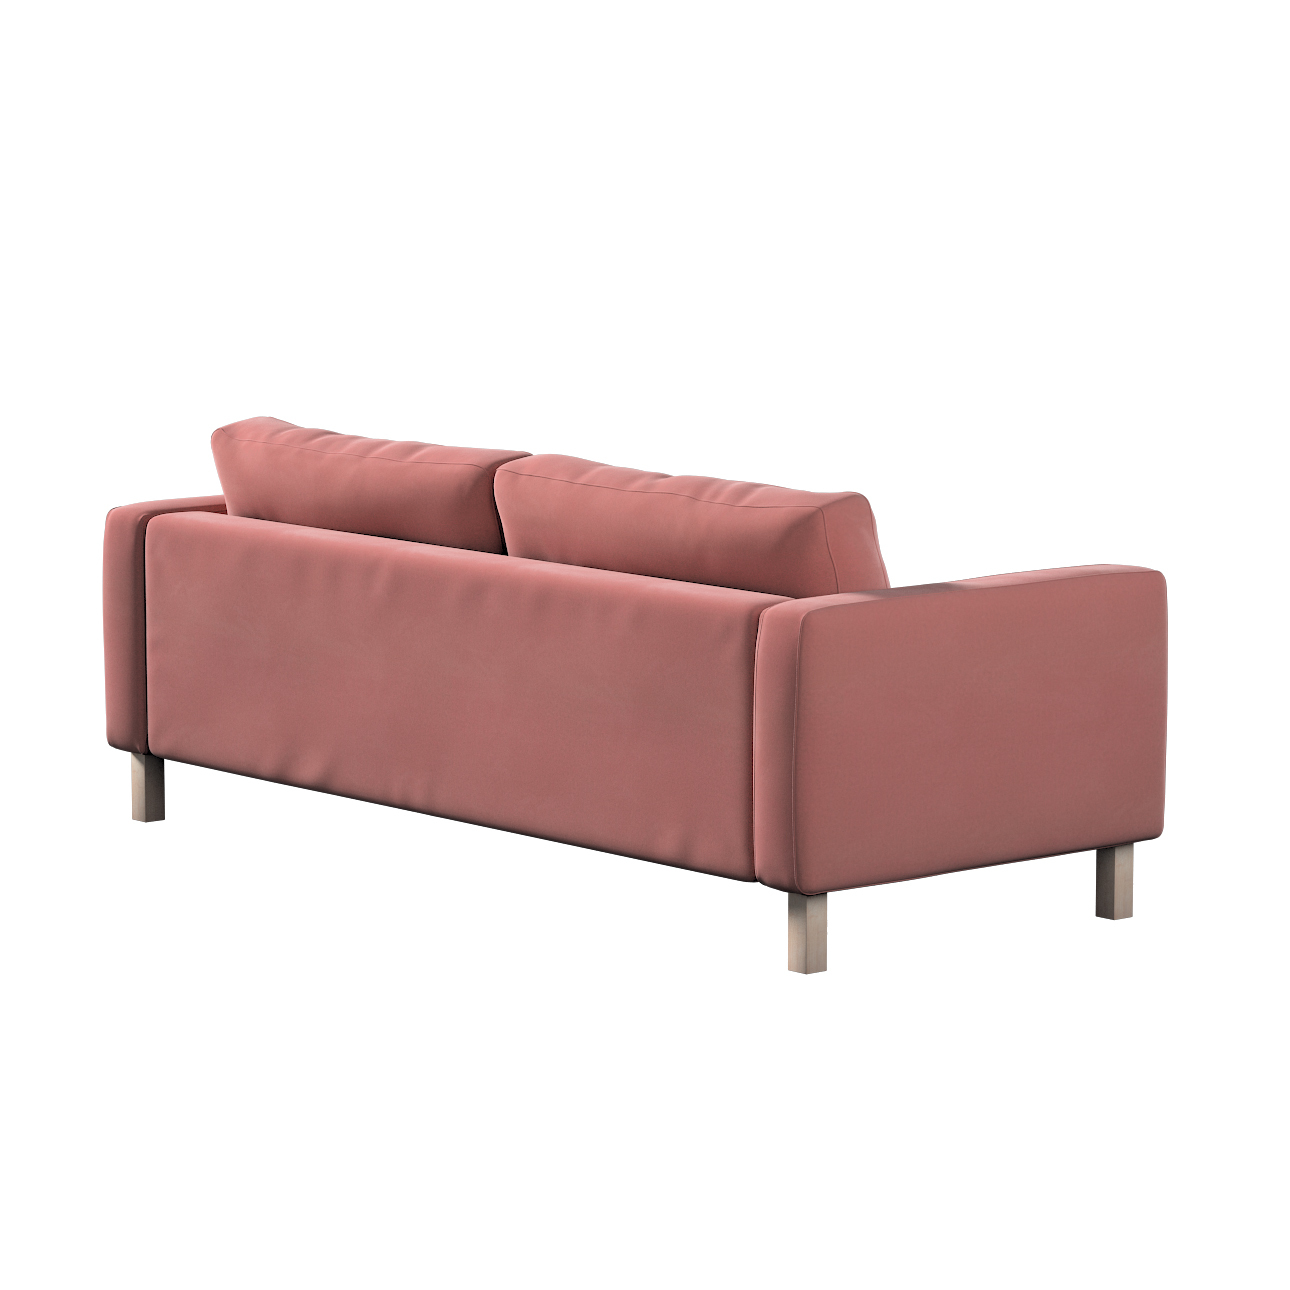 Bezug für Karlstad 3-Sitzer Sofa nicht ausklappbar, kurz, koralle, Bezug fü günstig online kaufen